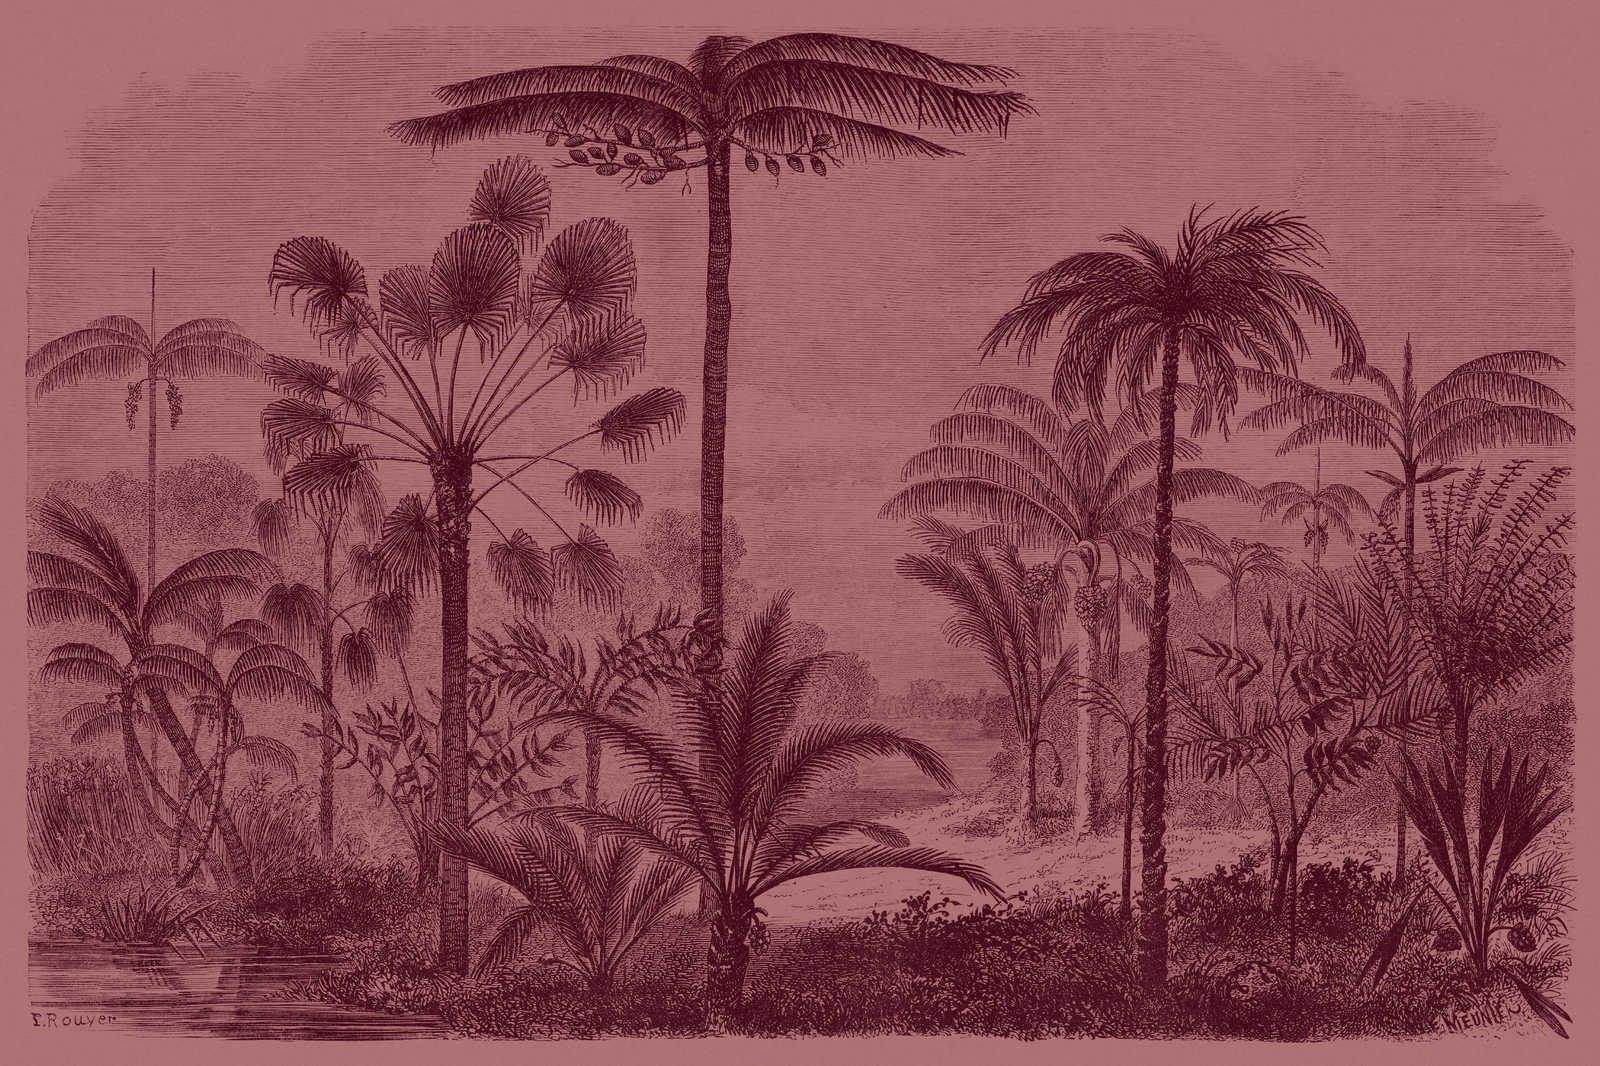             Jurassic 2 - Lienzo motivo selva cobre - 0,90 m x 0,60 m
        